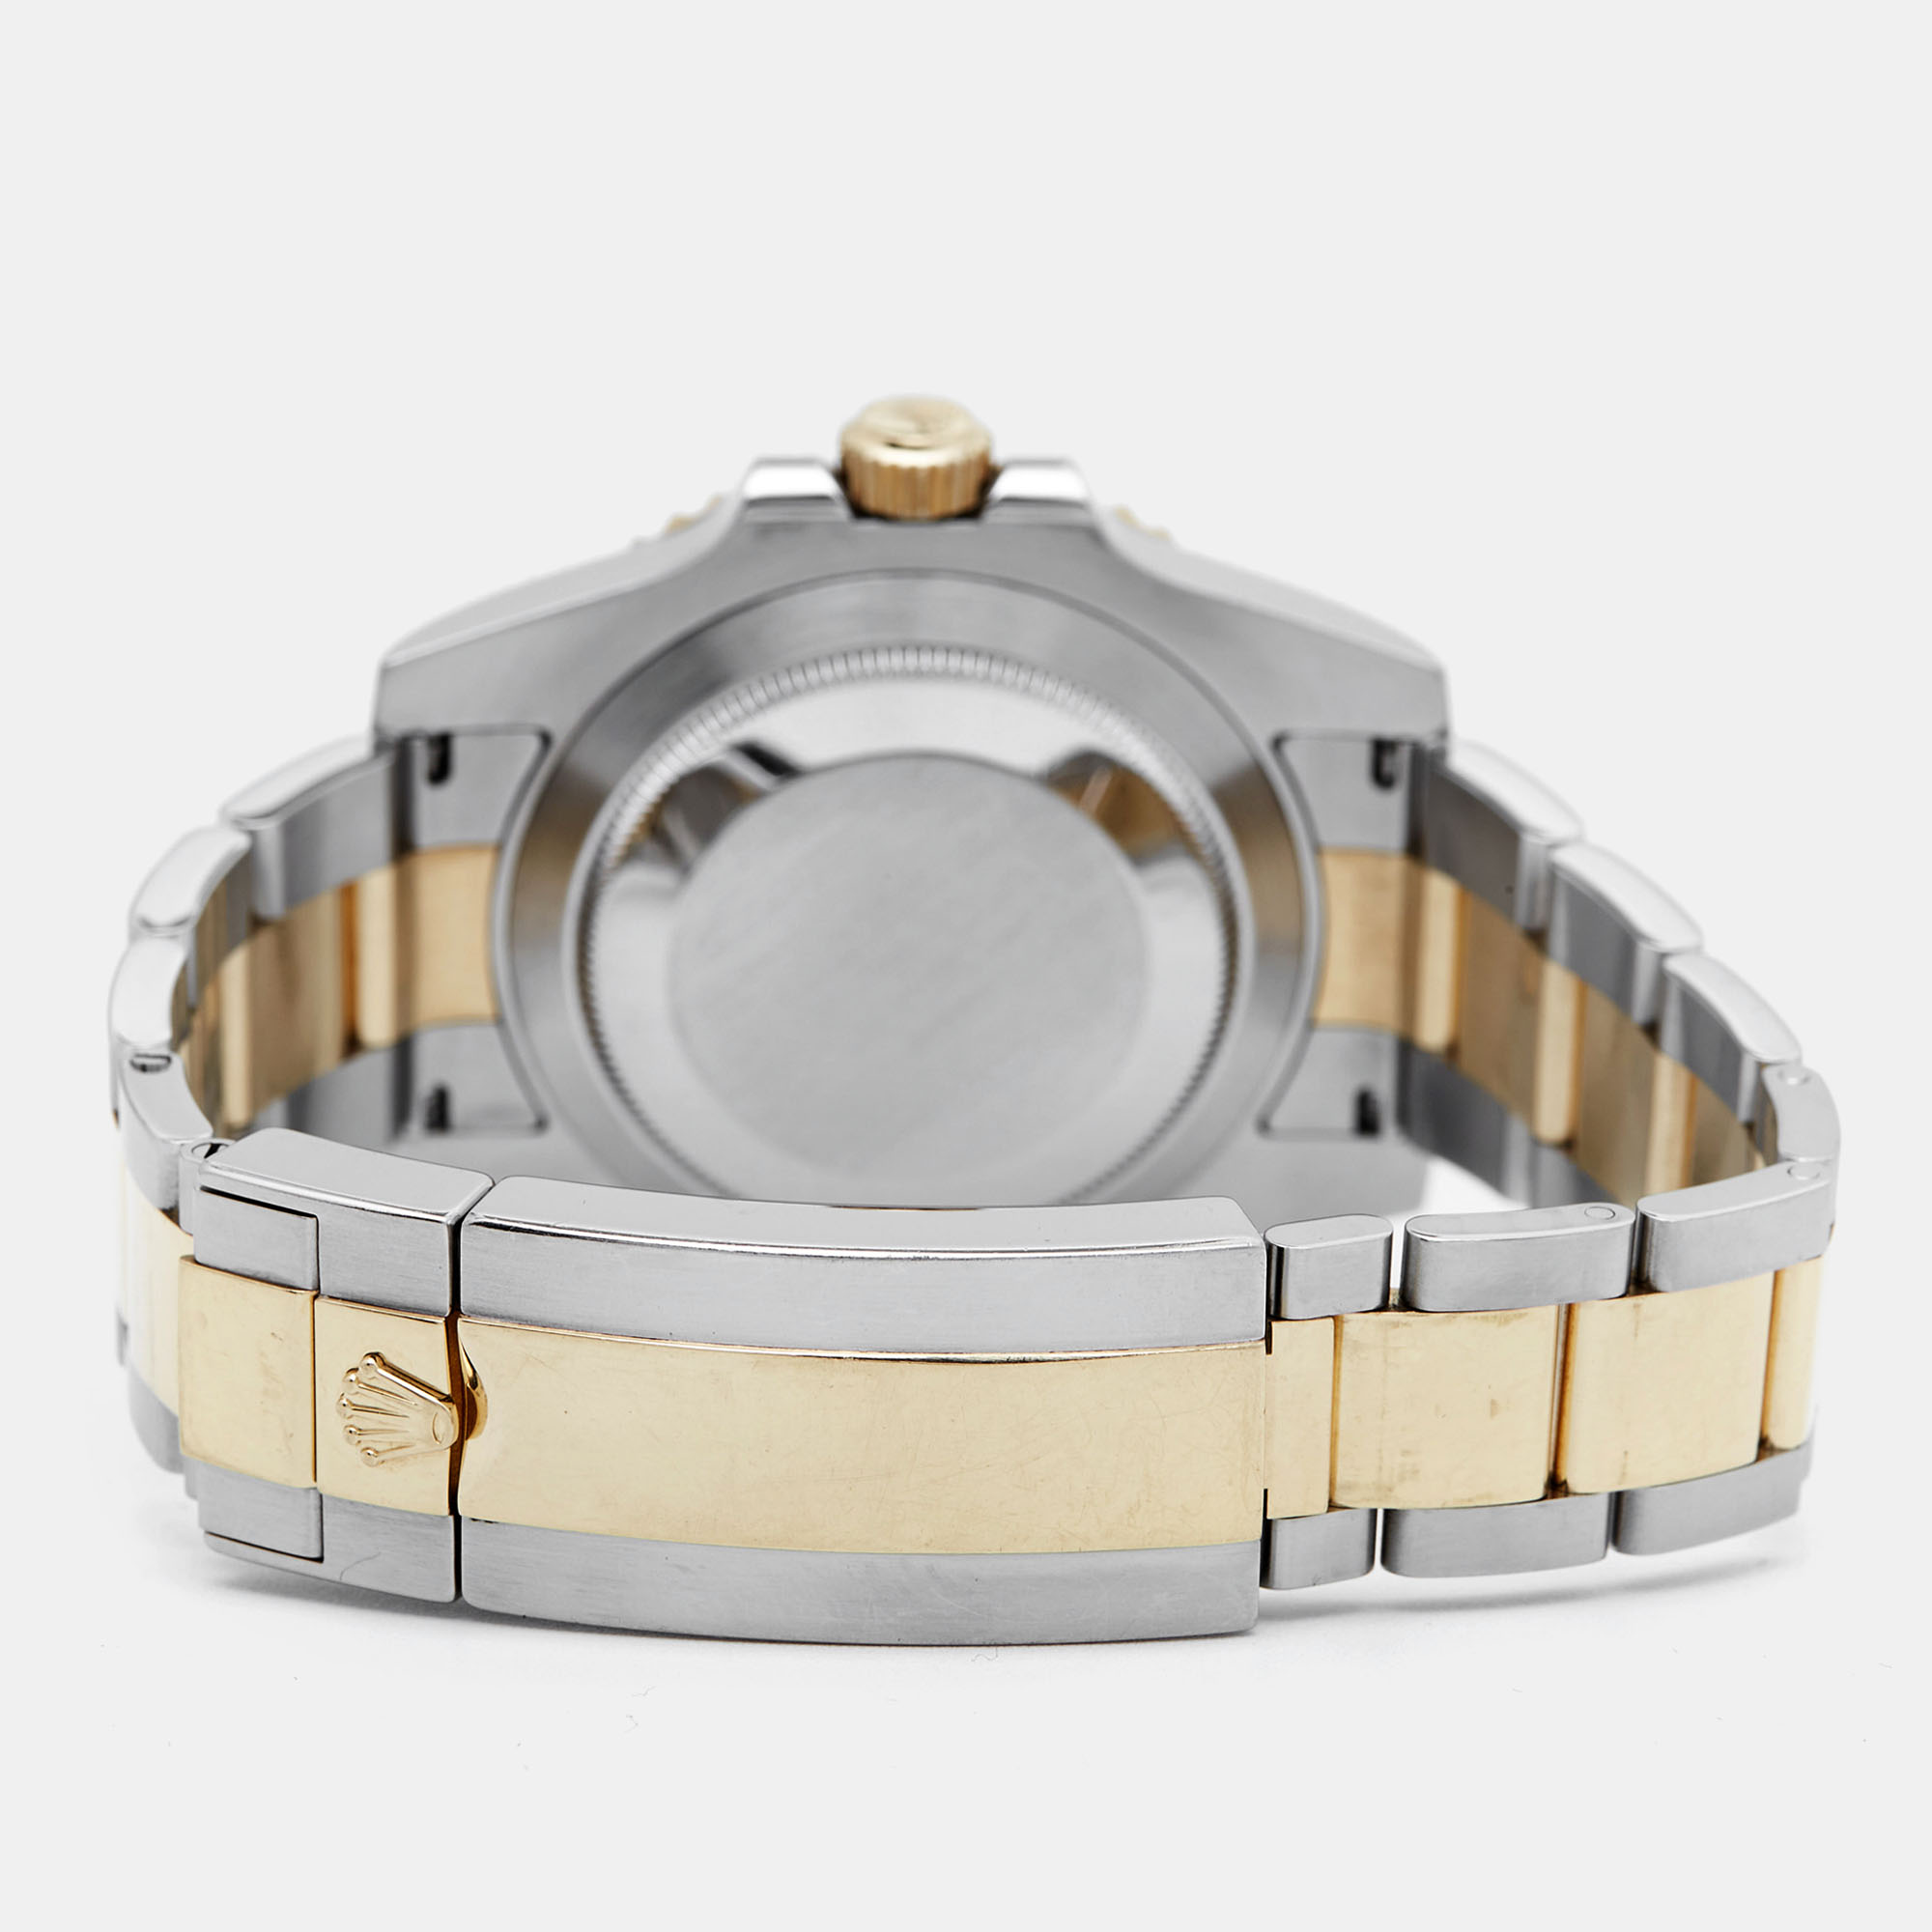 Rolex Blue 18K Yellow Gold Stainless Steel Submariner 116613 Men's Wristwatch 40 Mm